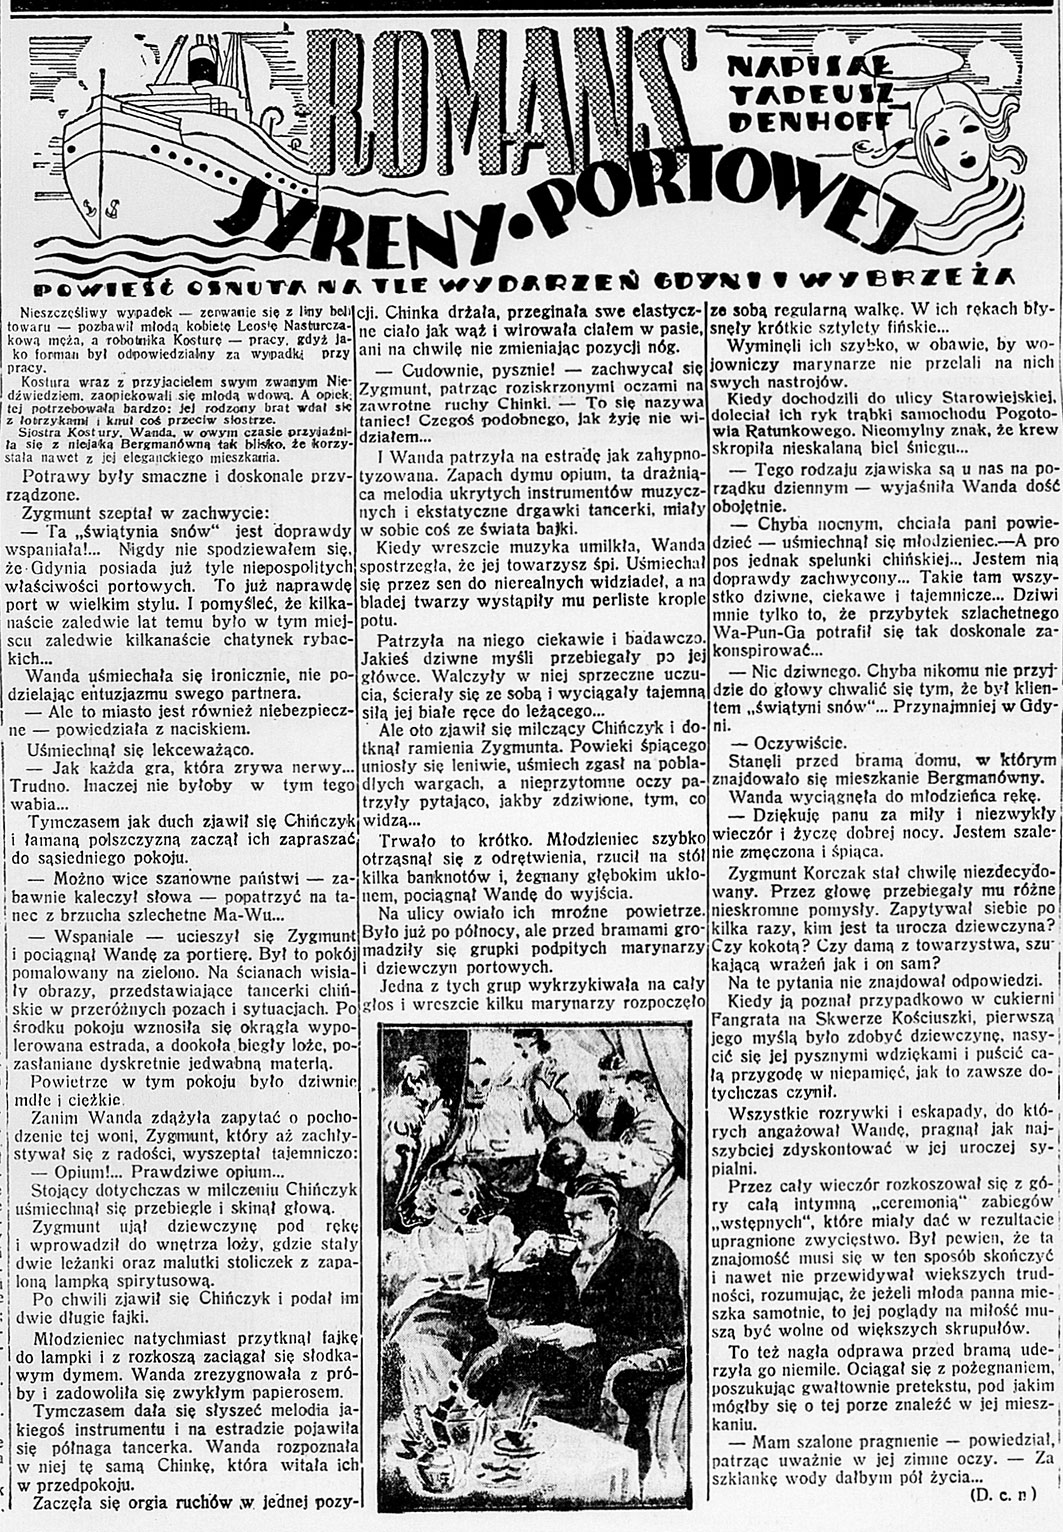 Romans syreny portowej / Tadeusz Denhoff // Dzień Dobry. - 1938, nr 24, s. 4. - Il.